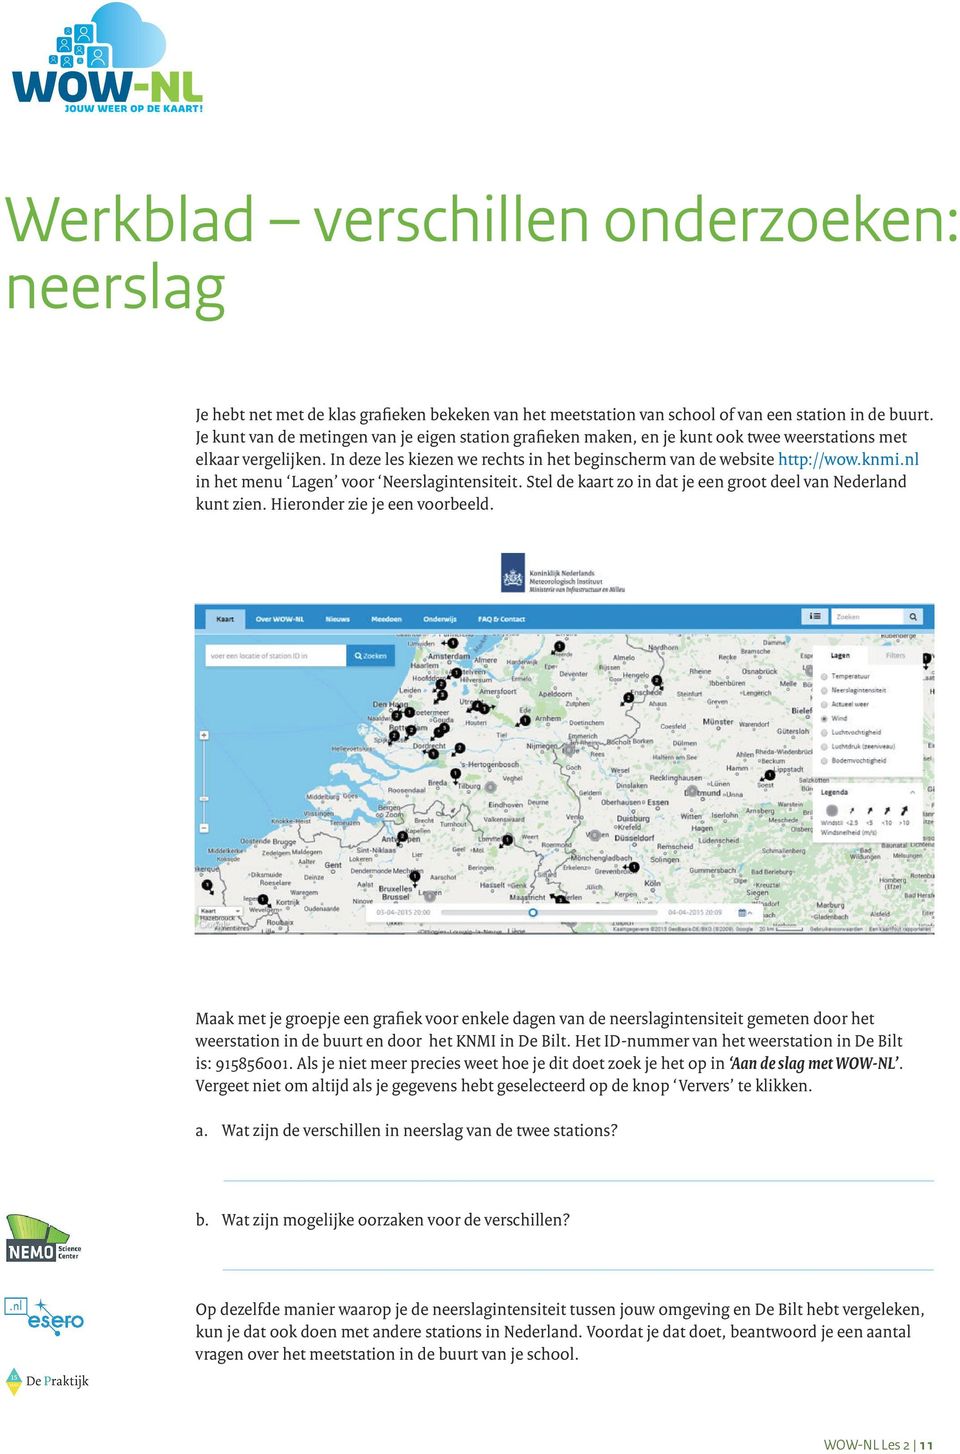 nl in het menu Lagen voor Neerslagintensiteit. Stel de kaart zo in dat je een groot deel van Nederland kunt zien. Hieronder zie je een voorbeeld.